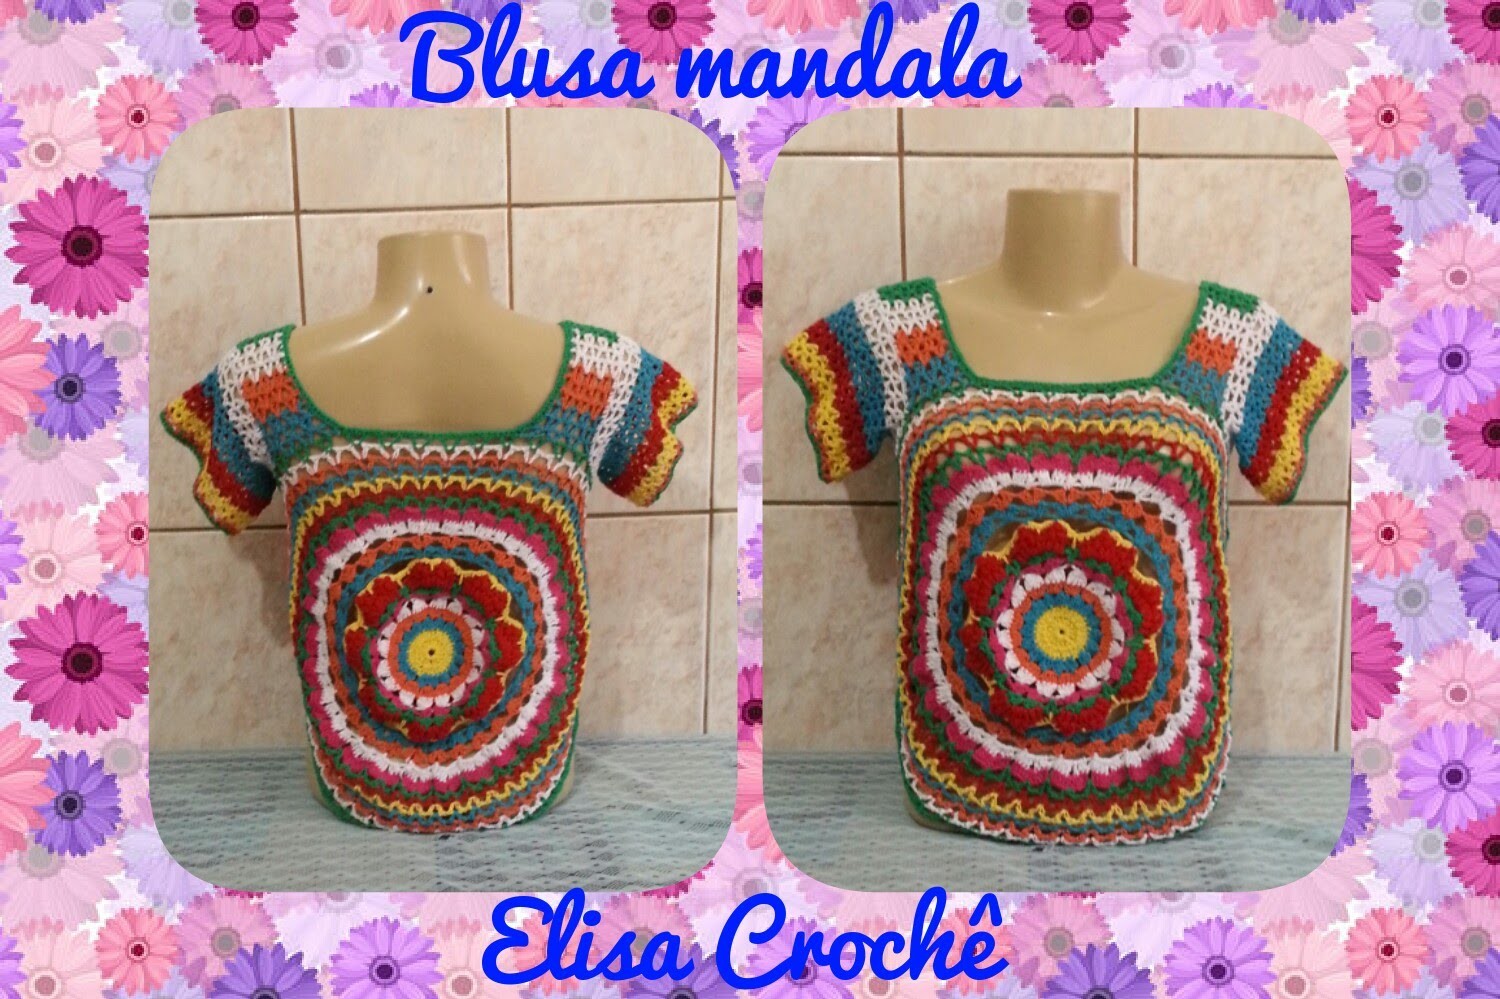 Blusa mandala com sobras de linhas de crochê ( 2ª parte ) # Elisa Crochê